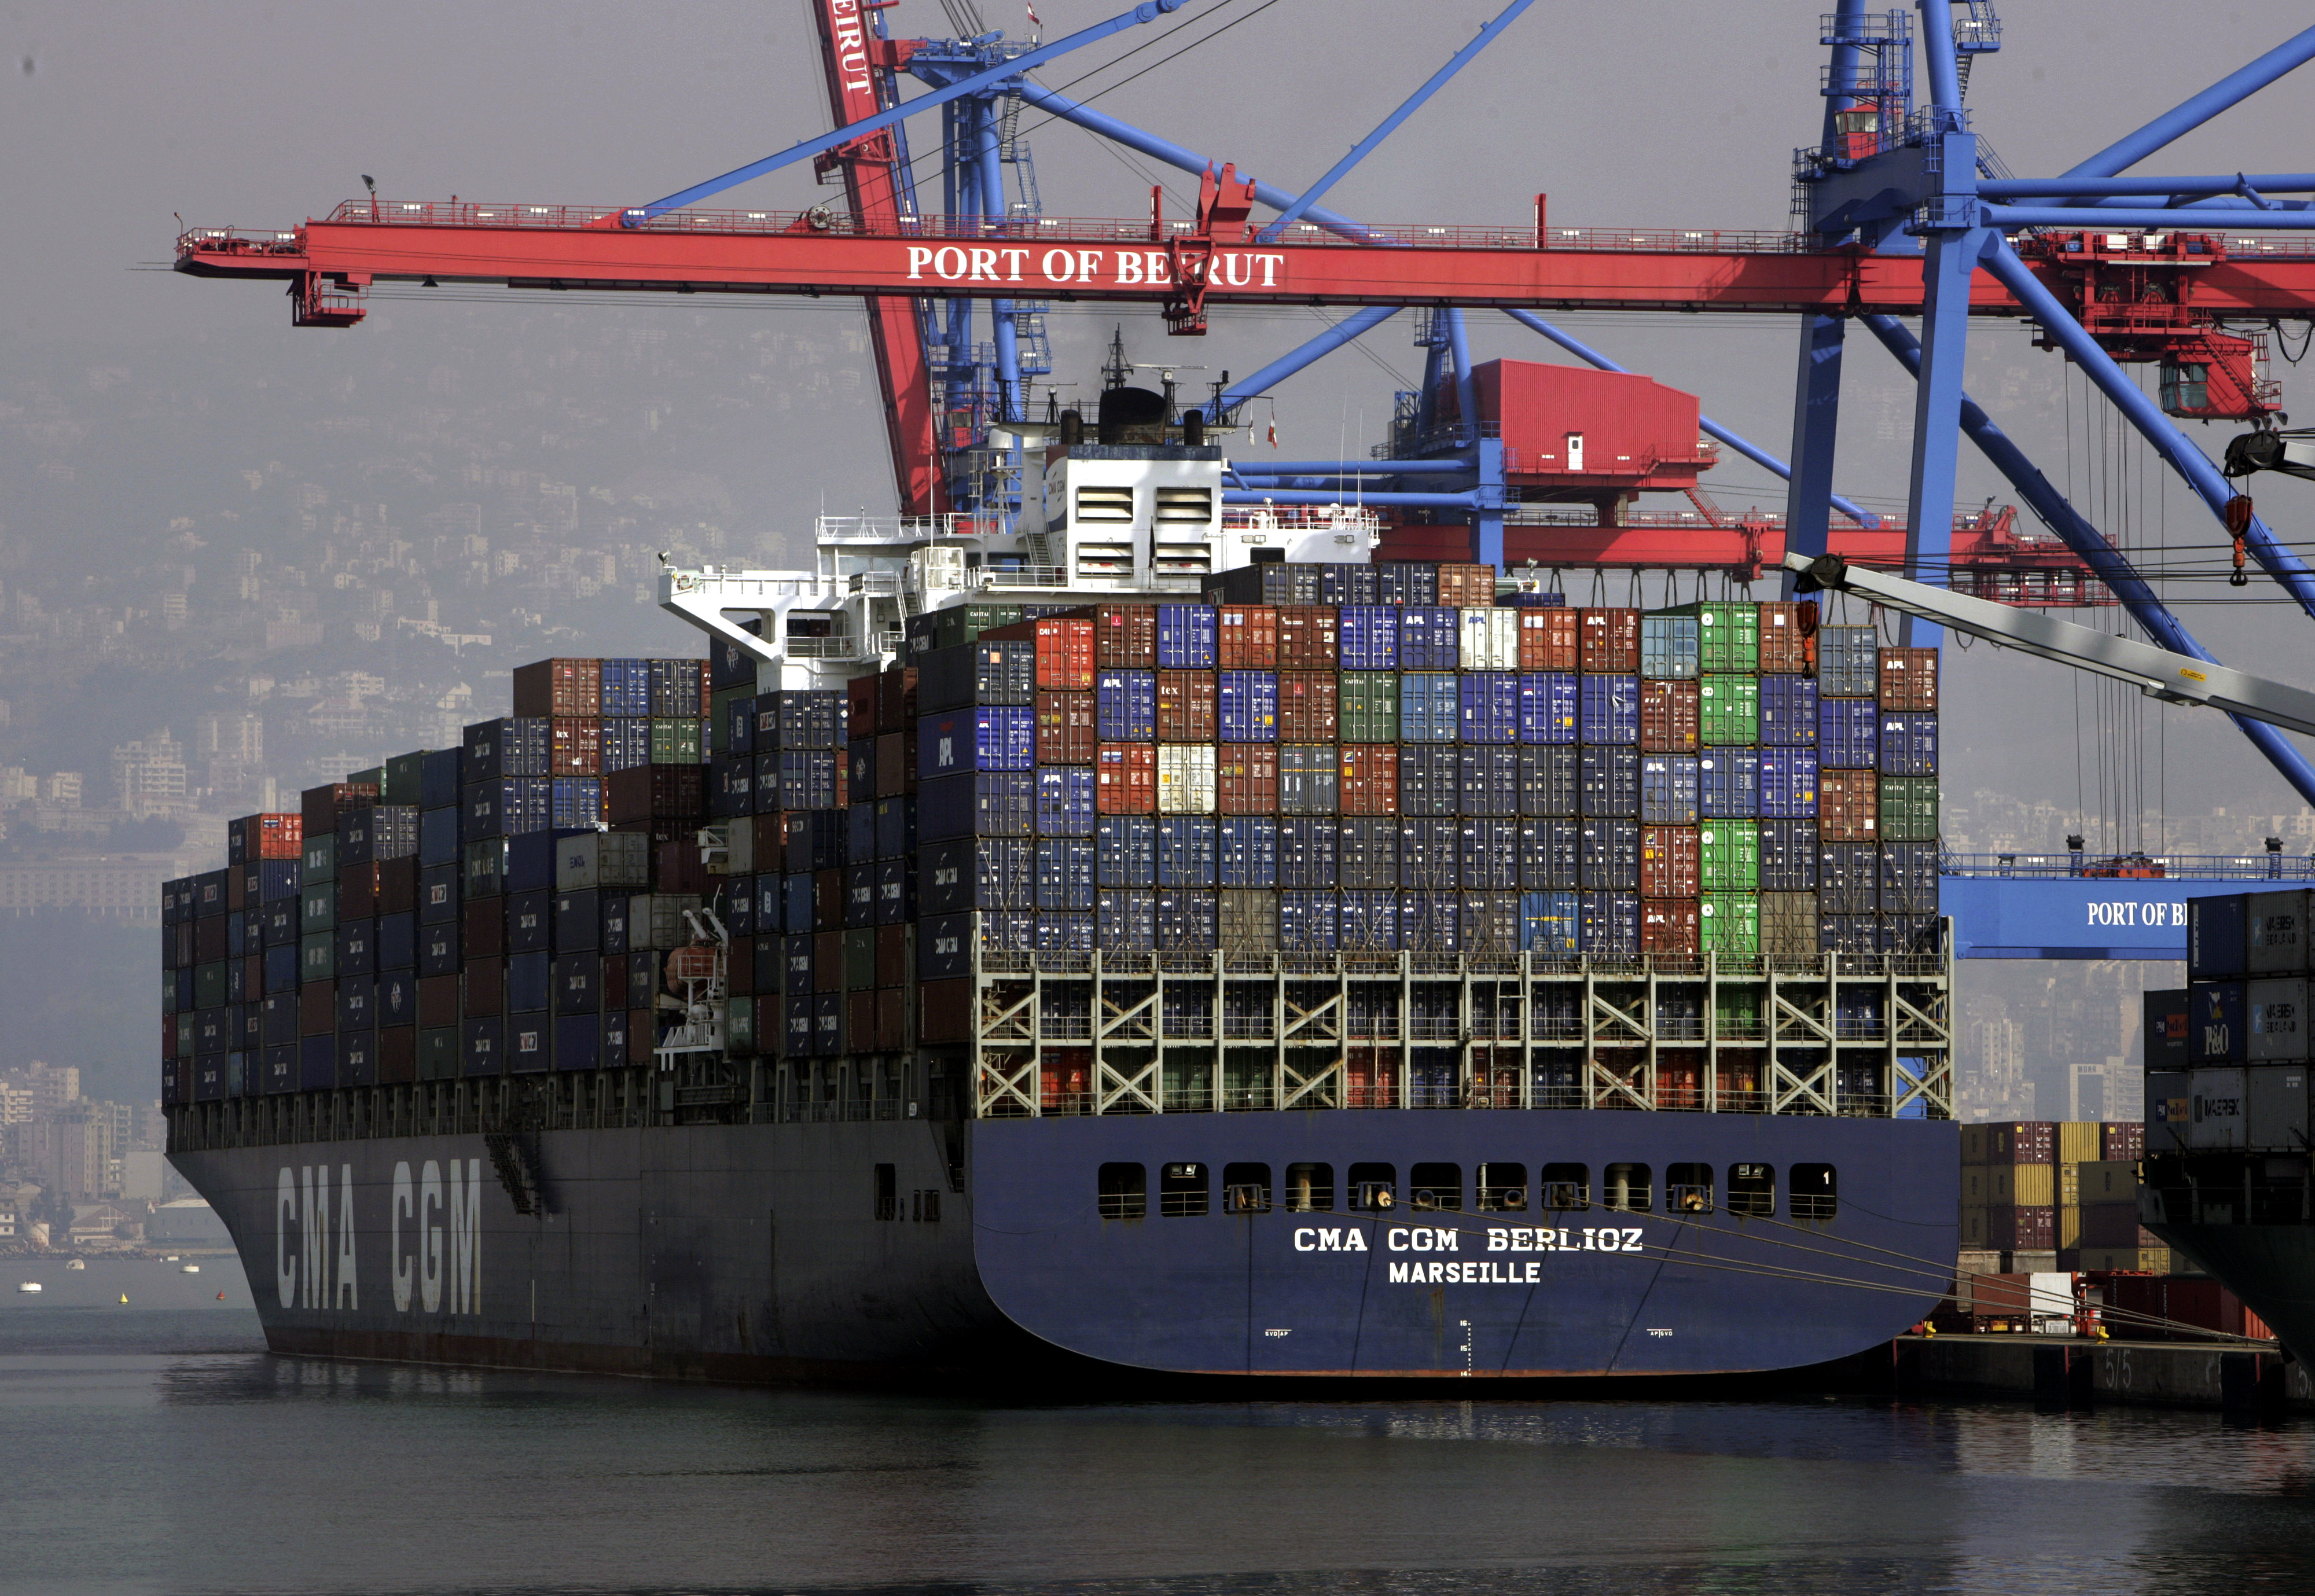 Kran und Schiff im Containerhafen von Beirut, die Aufnahme entstand vor der Explosionskatastrophe am 4. August 2020